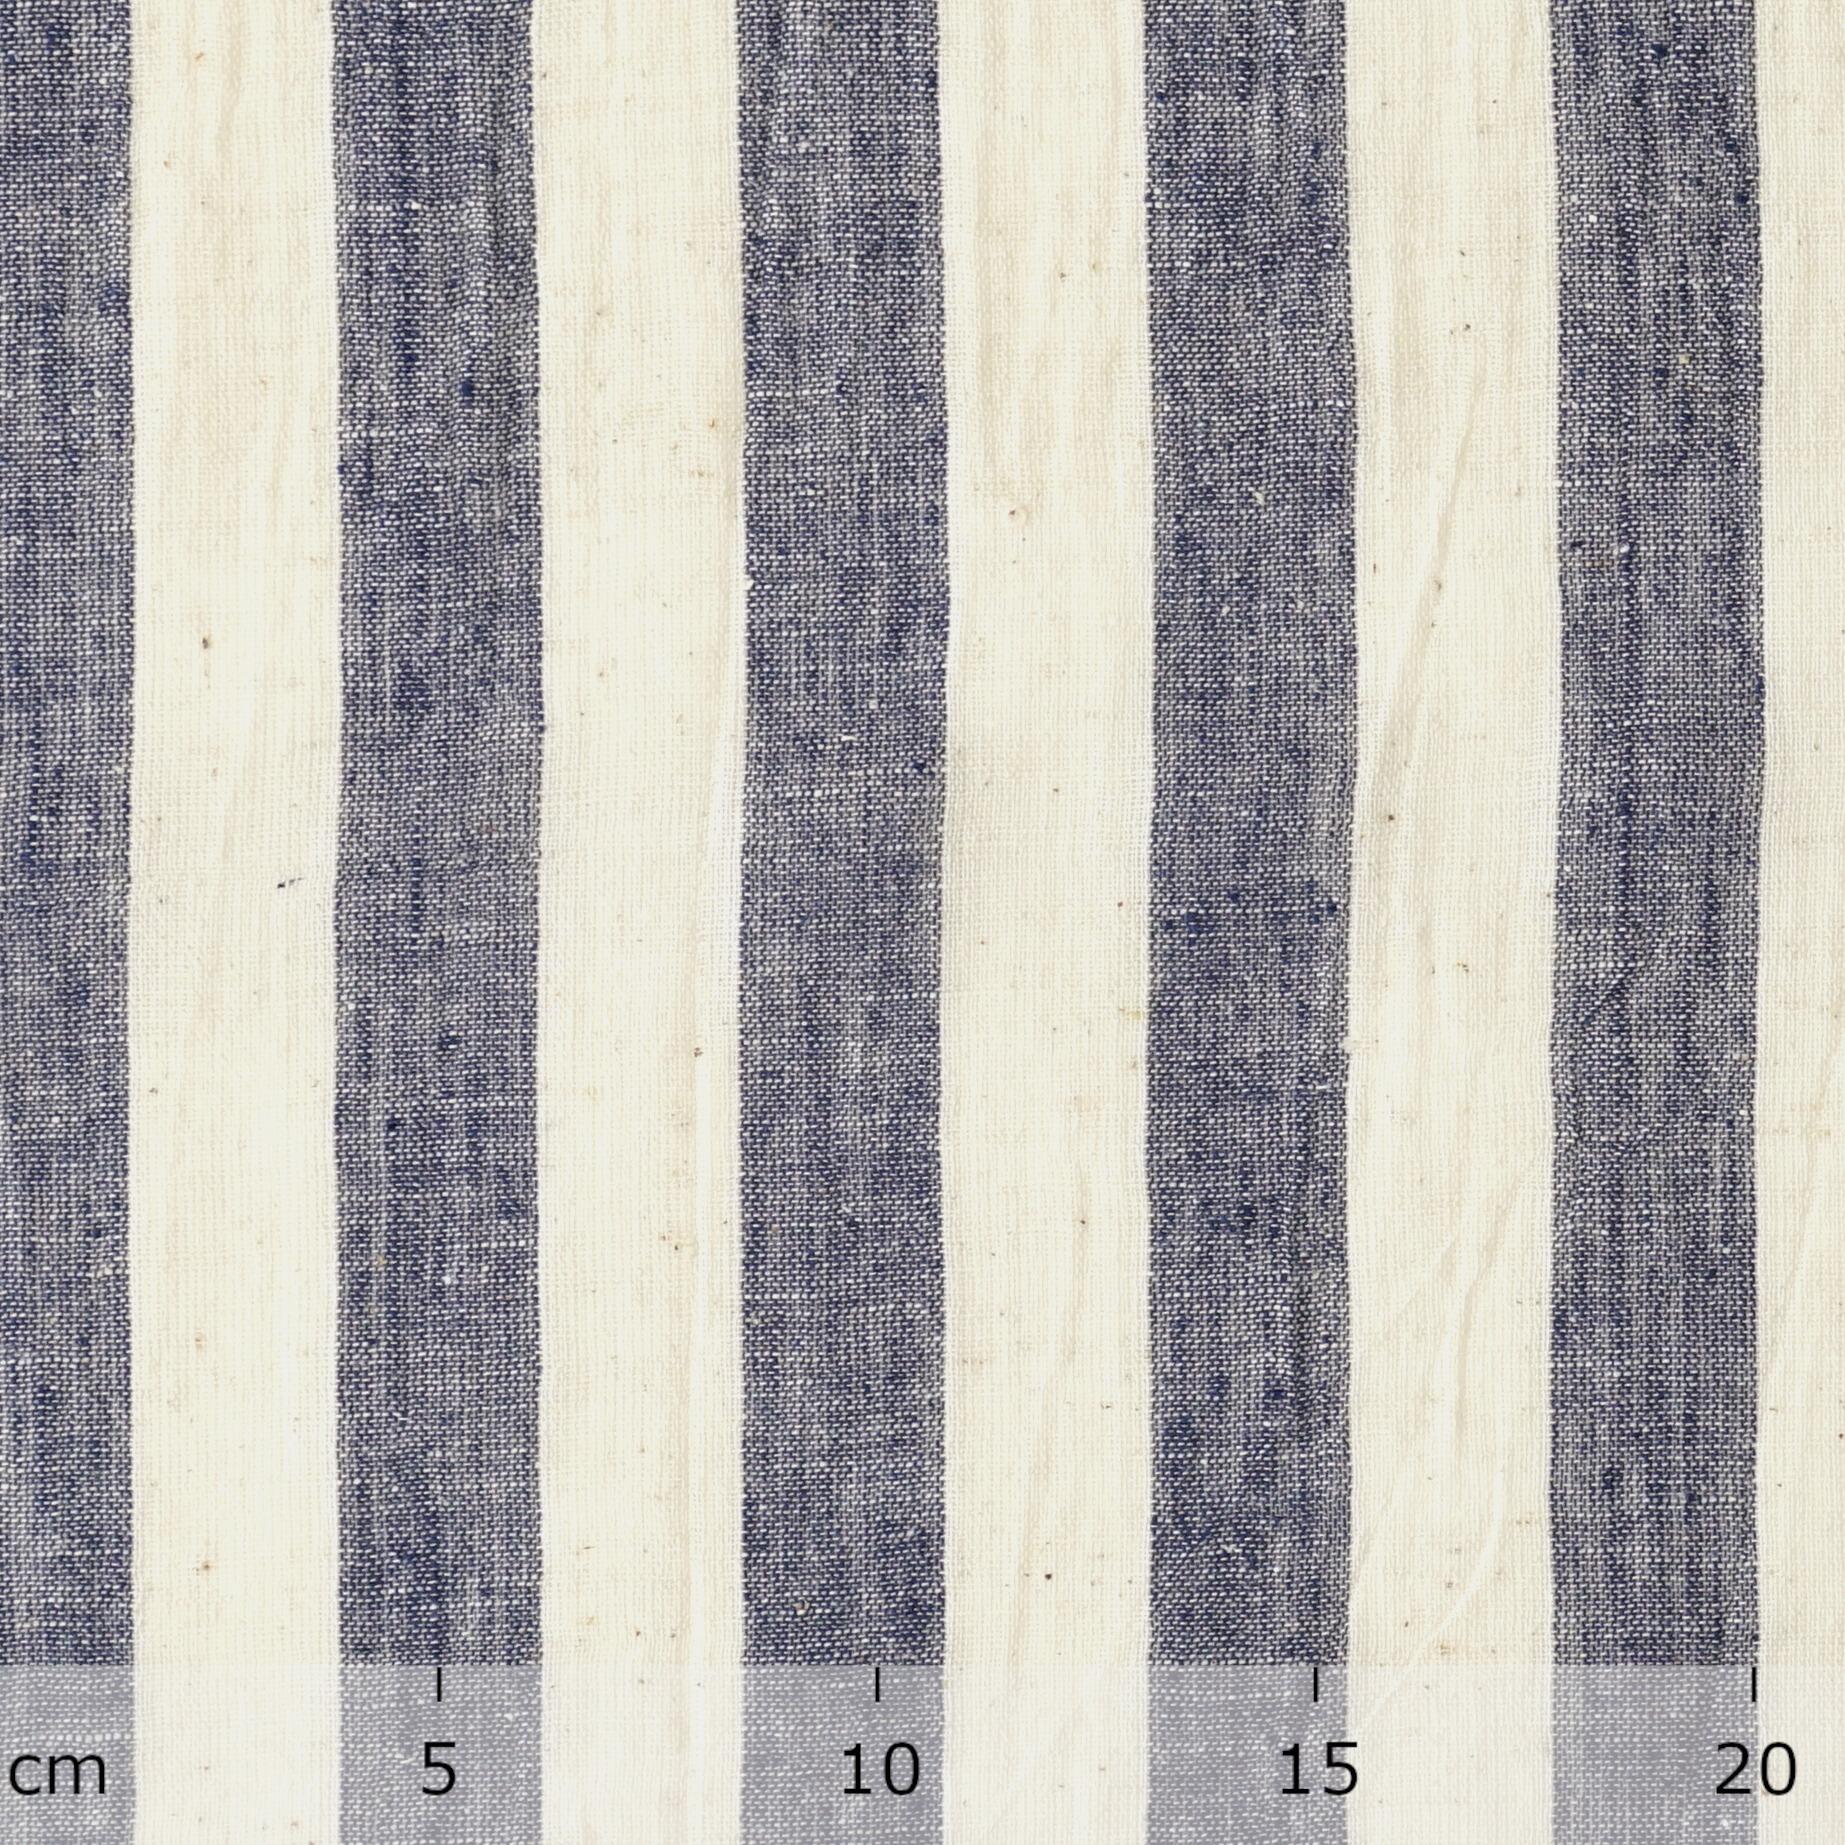 KJC03 - Organic Kala Cotton - Handloom Woven - Plain Weave - 1 by 1 - Stripes - Blue Yarn Dye - Ruler